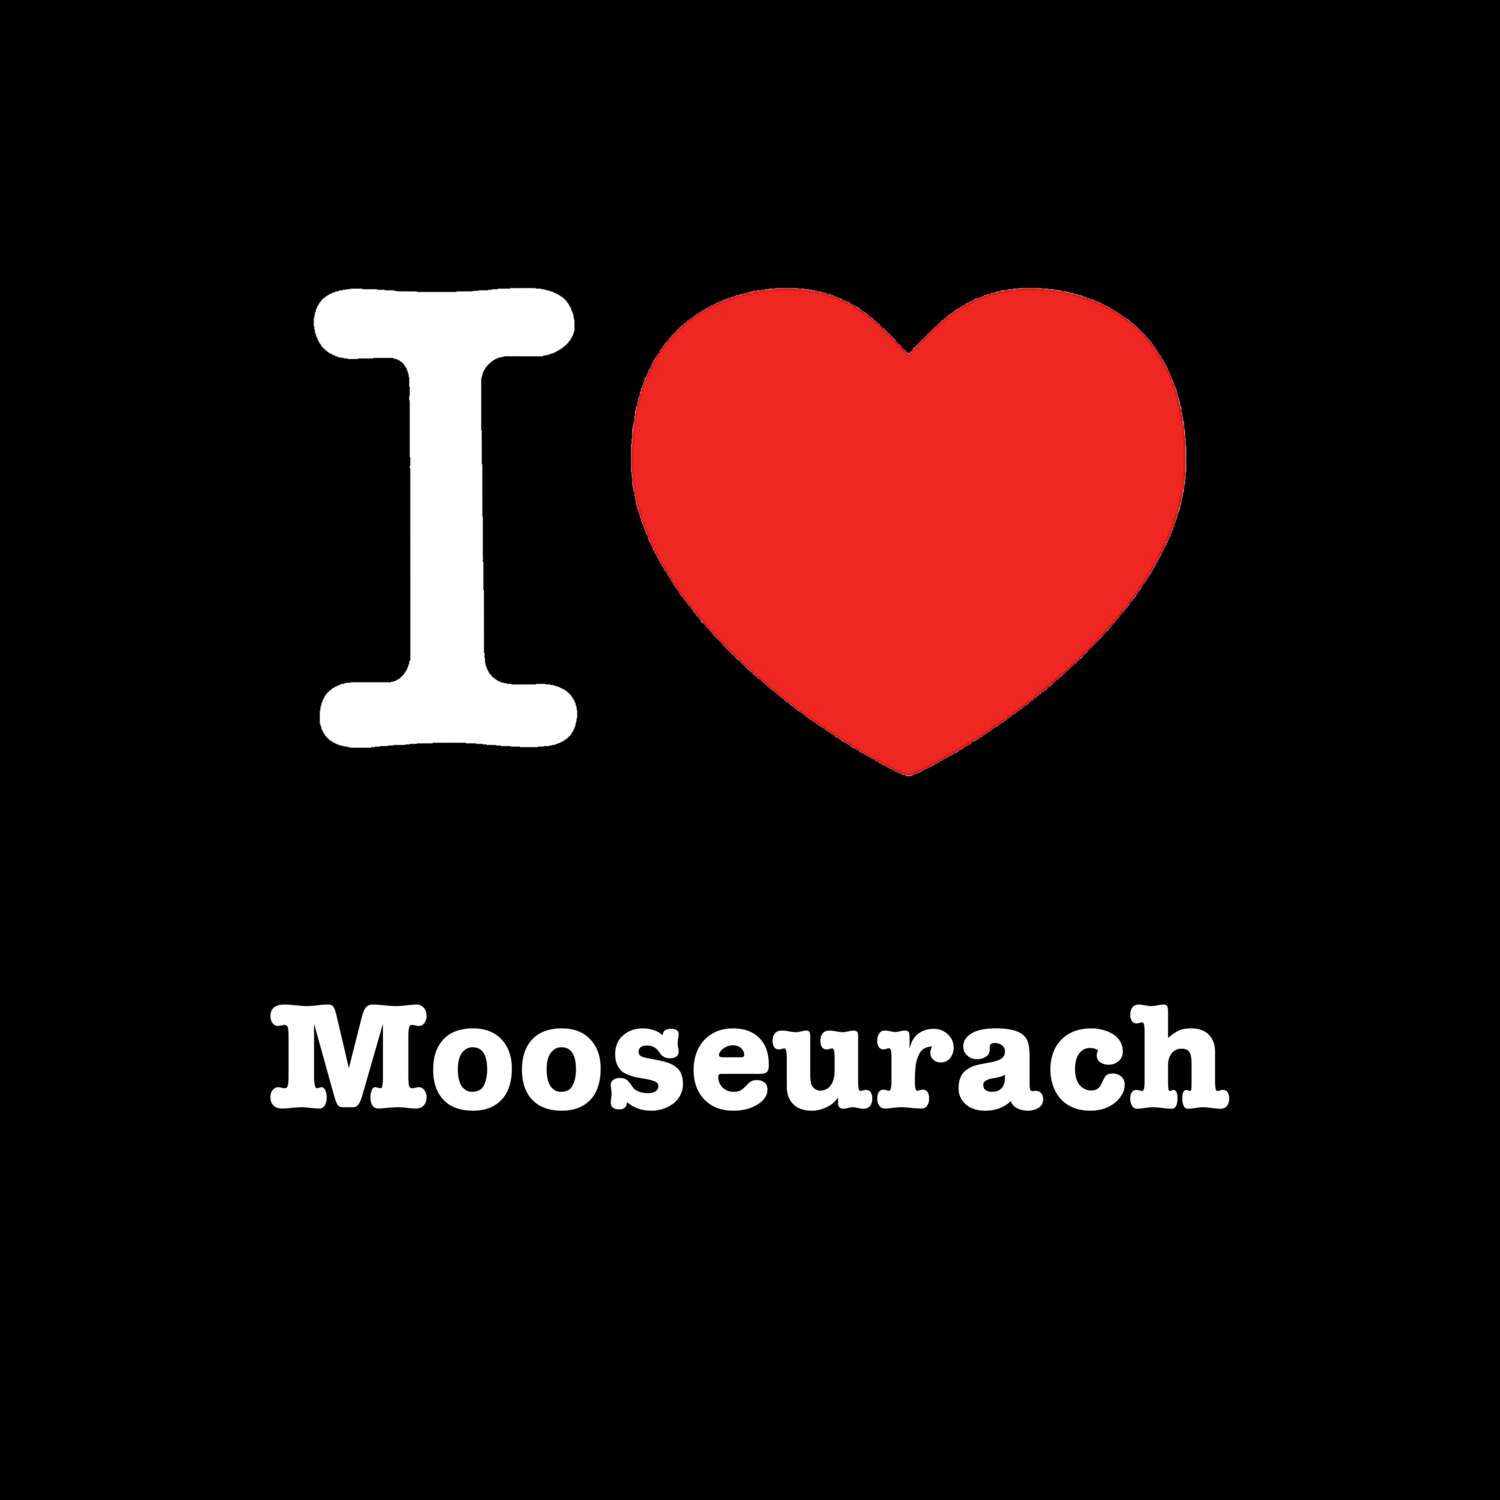 Mooseurach T-Shirt »I love«